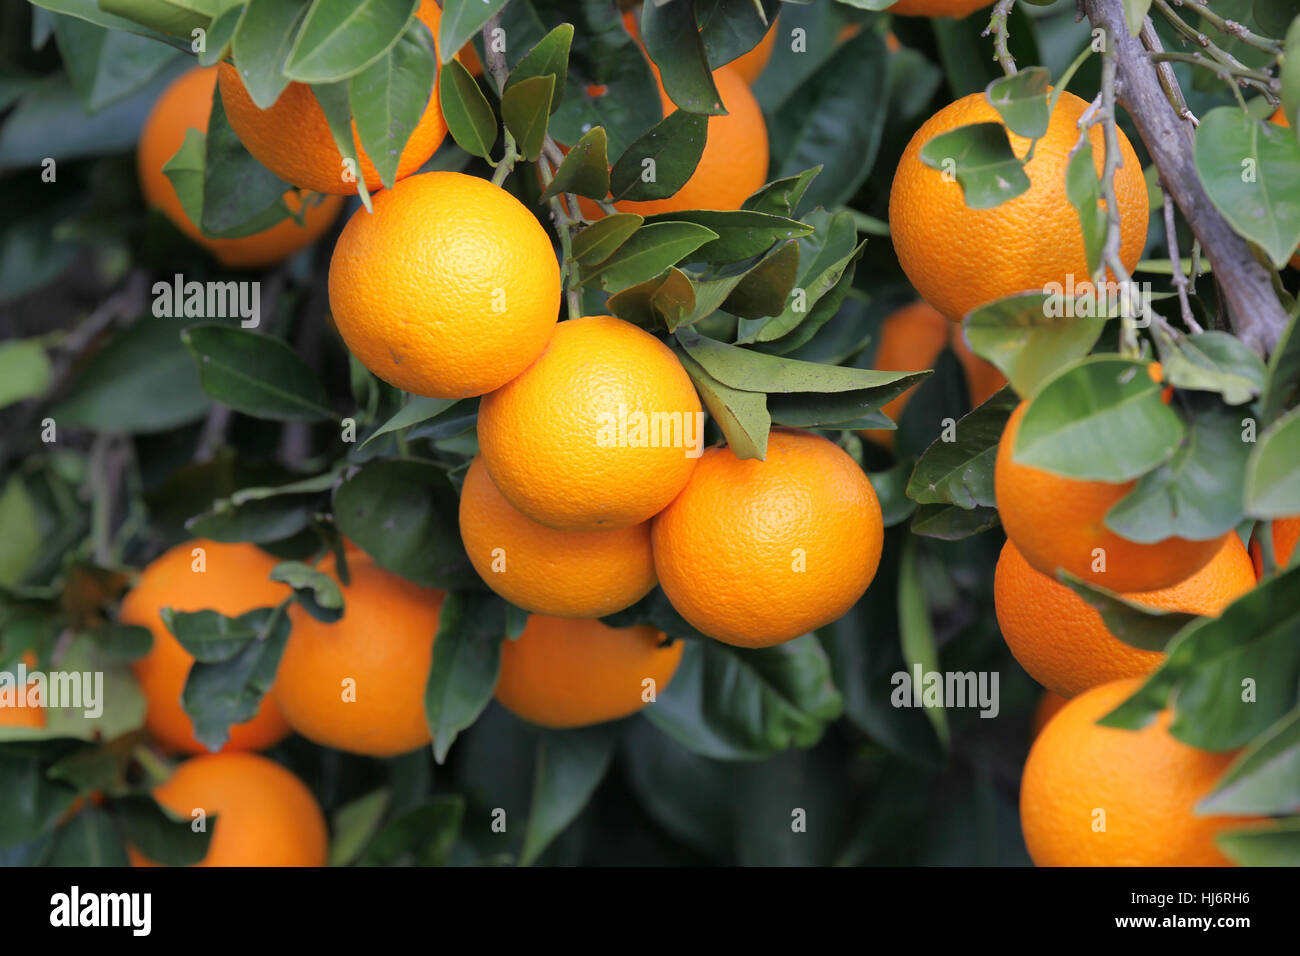 detail view of an orange tree Stock Photo